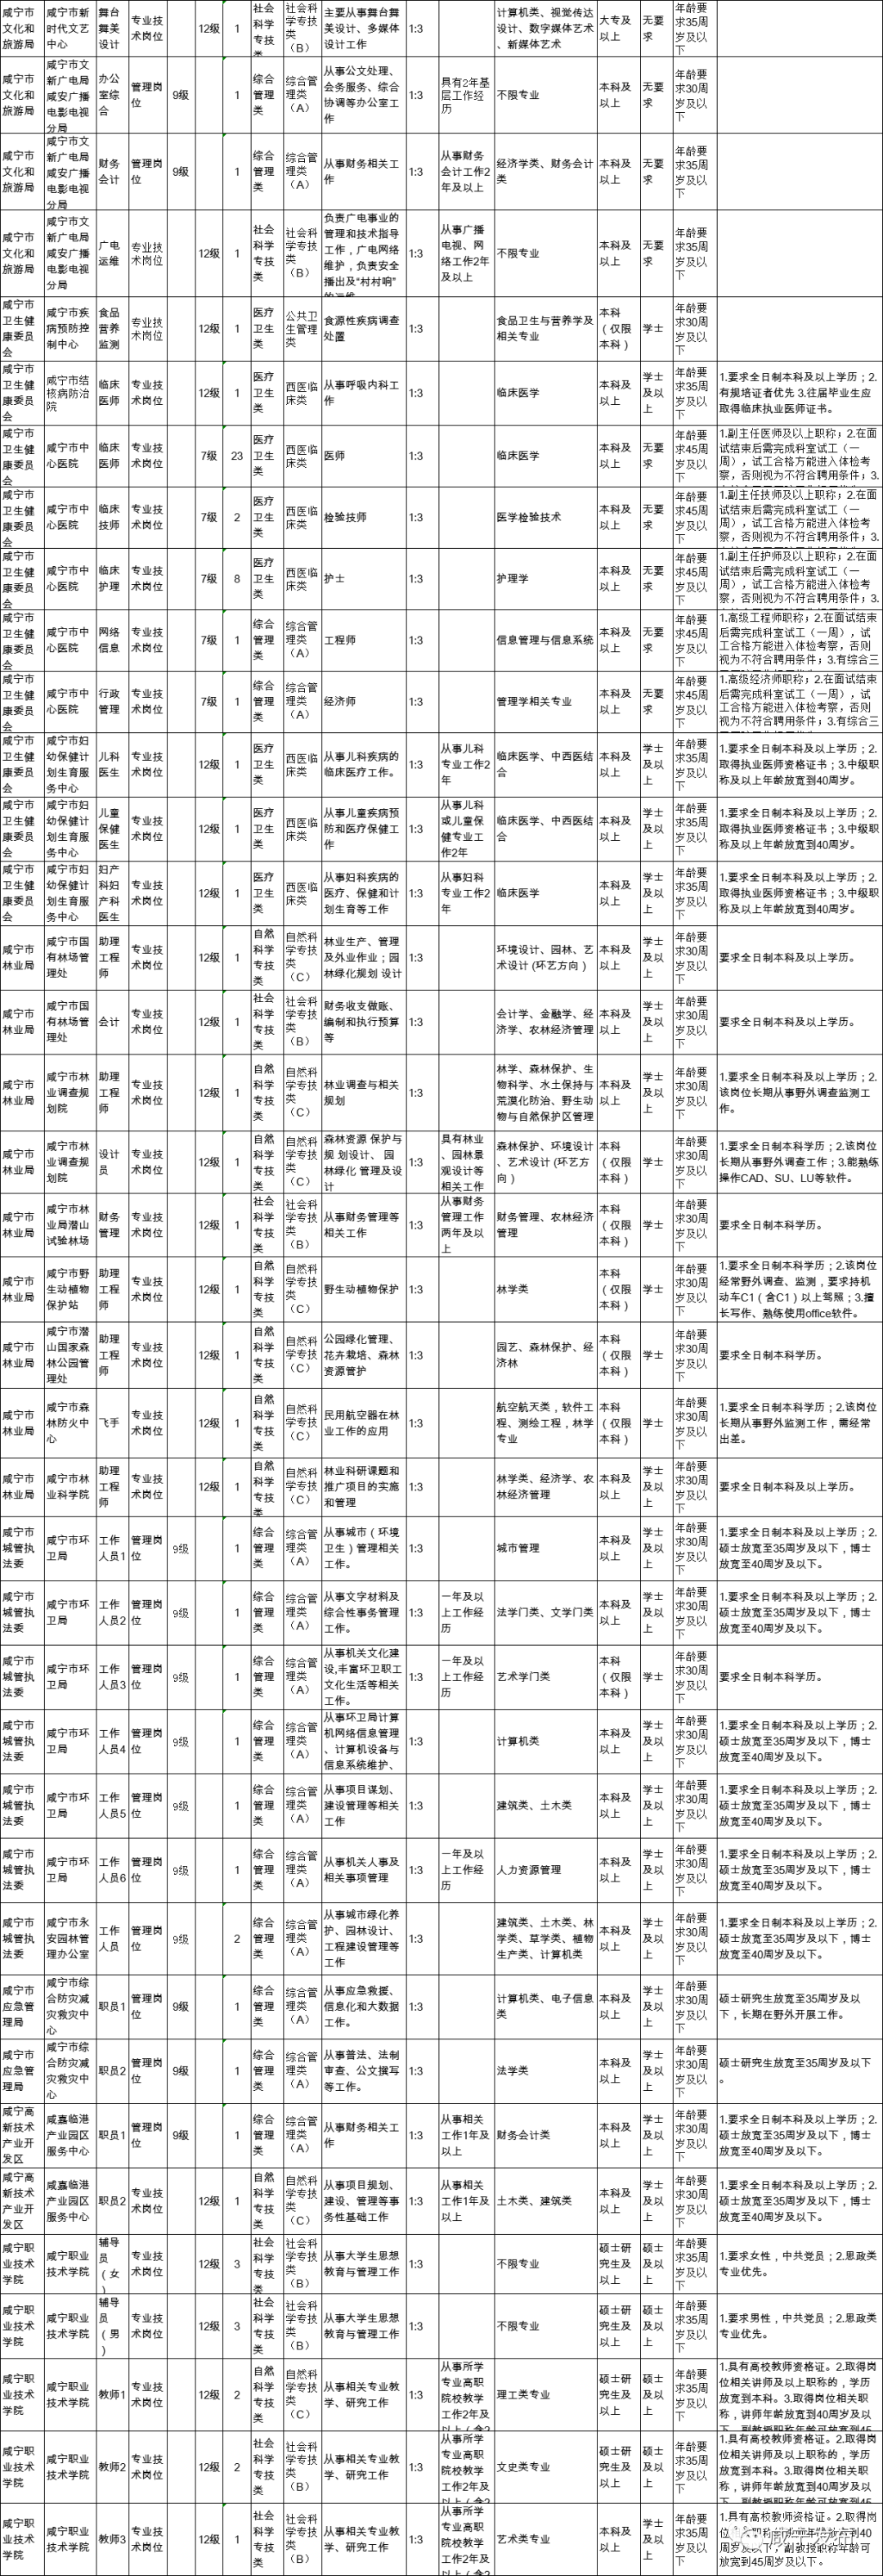 咸宁市直事业单位公开招聘197人